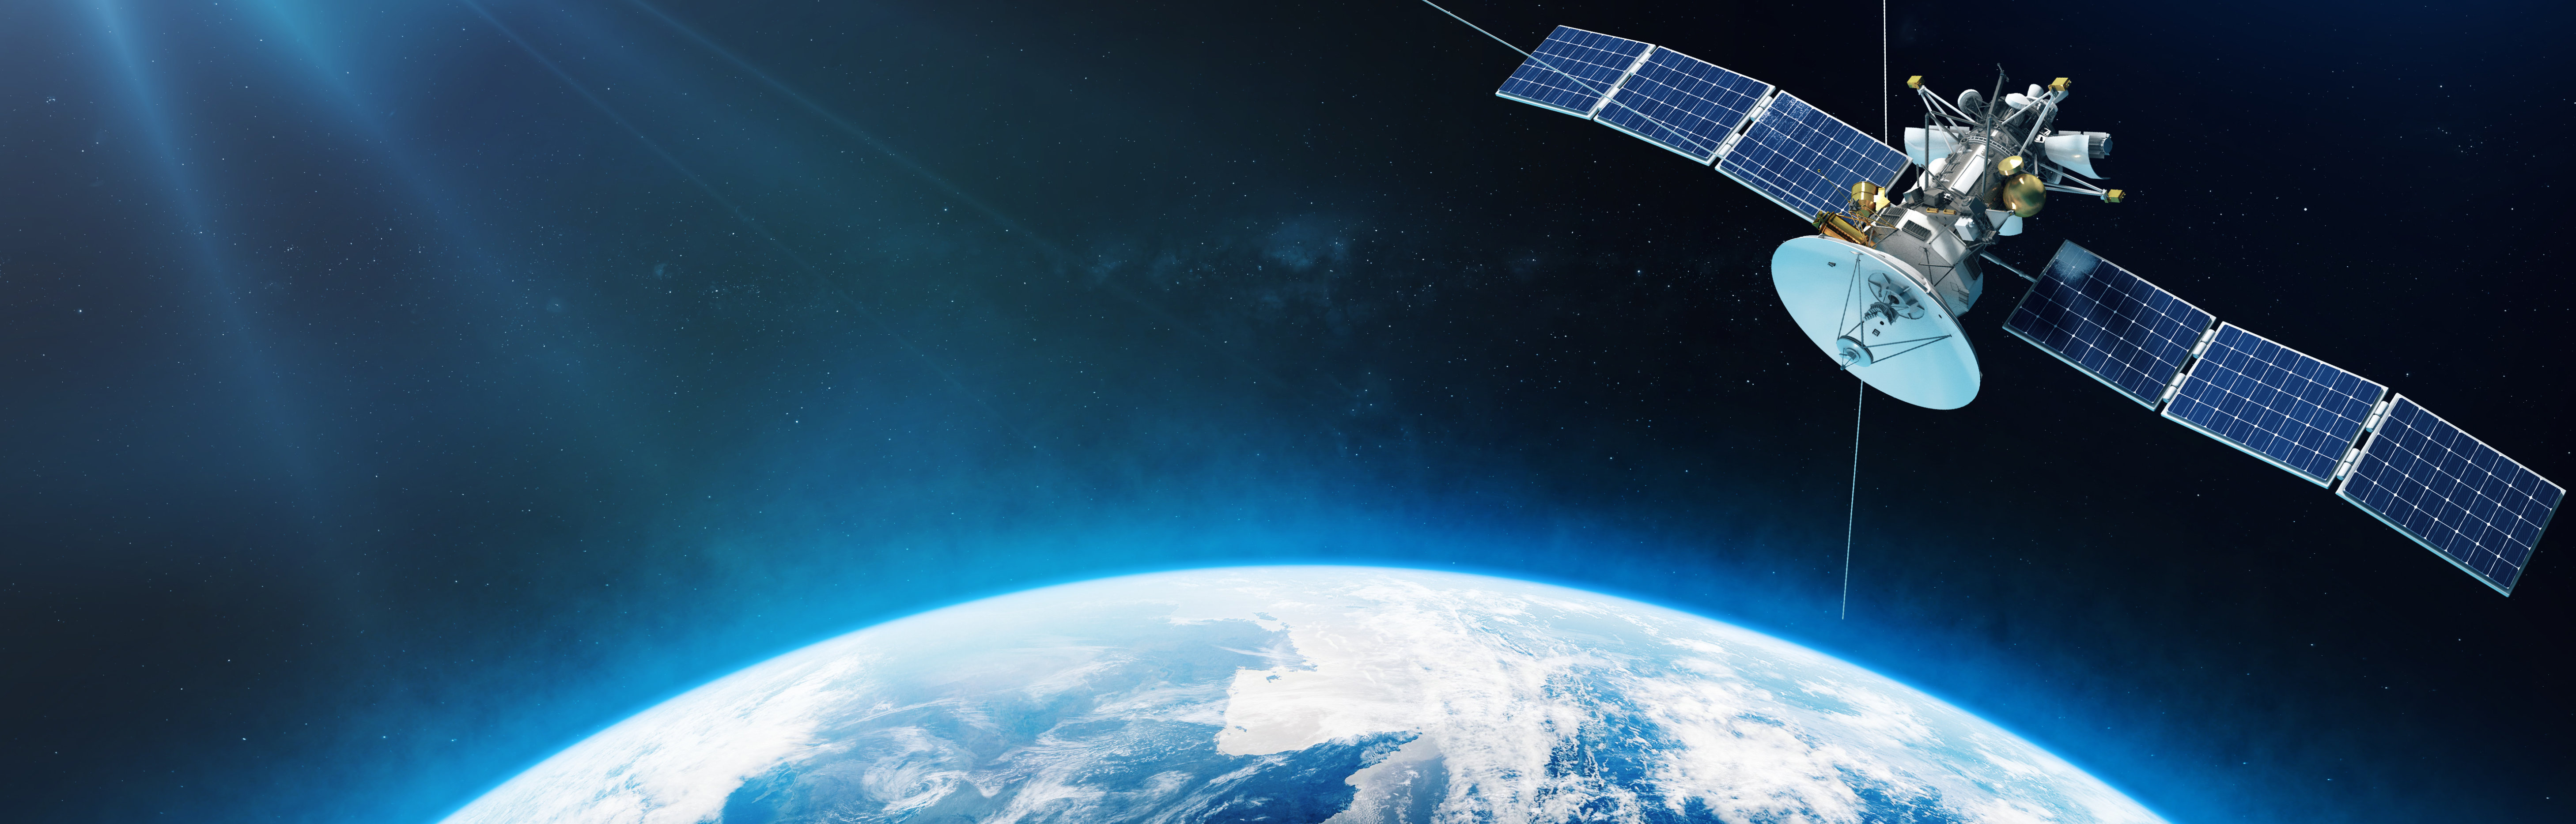 Satellites and space  / Satelliten und Weltraum  